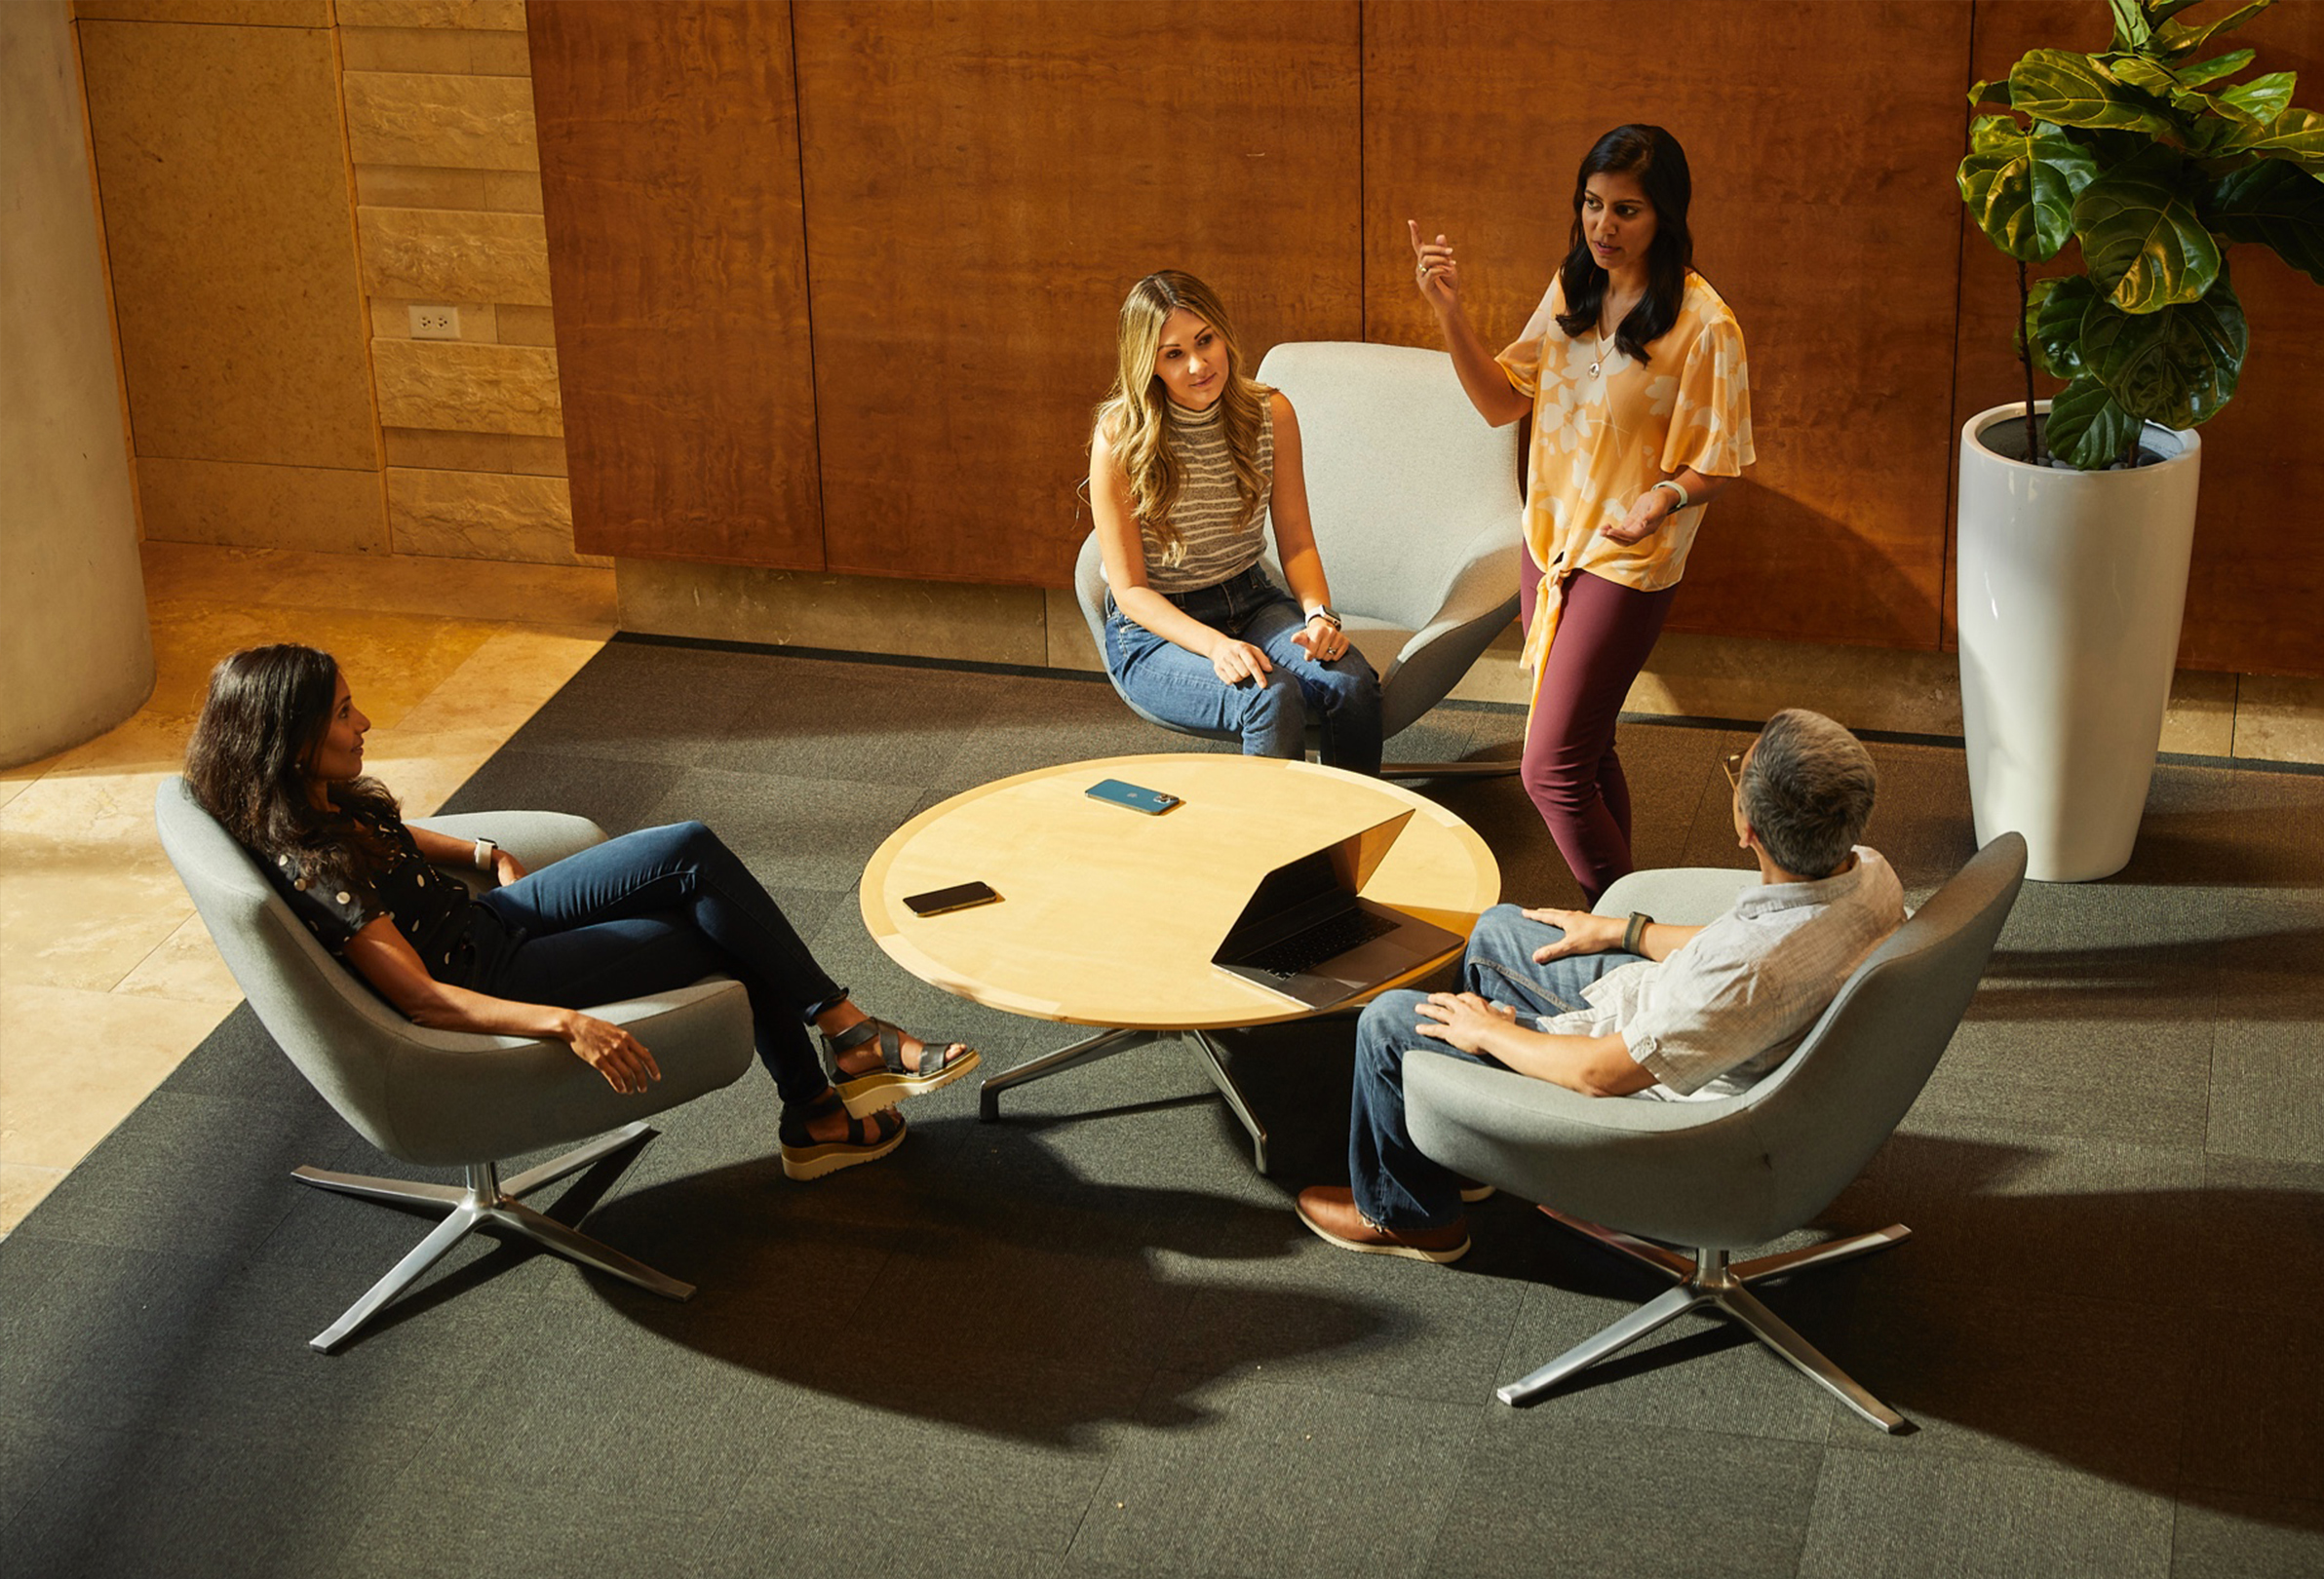 くつろいだ雰囲気の共同スペースで、椅子に座り話をしている4人のApple社員。